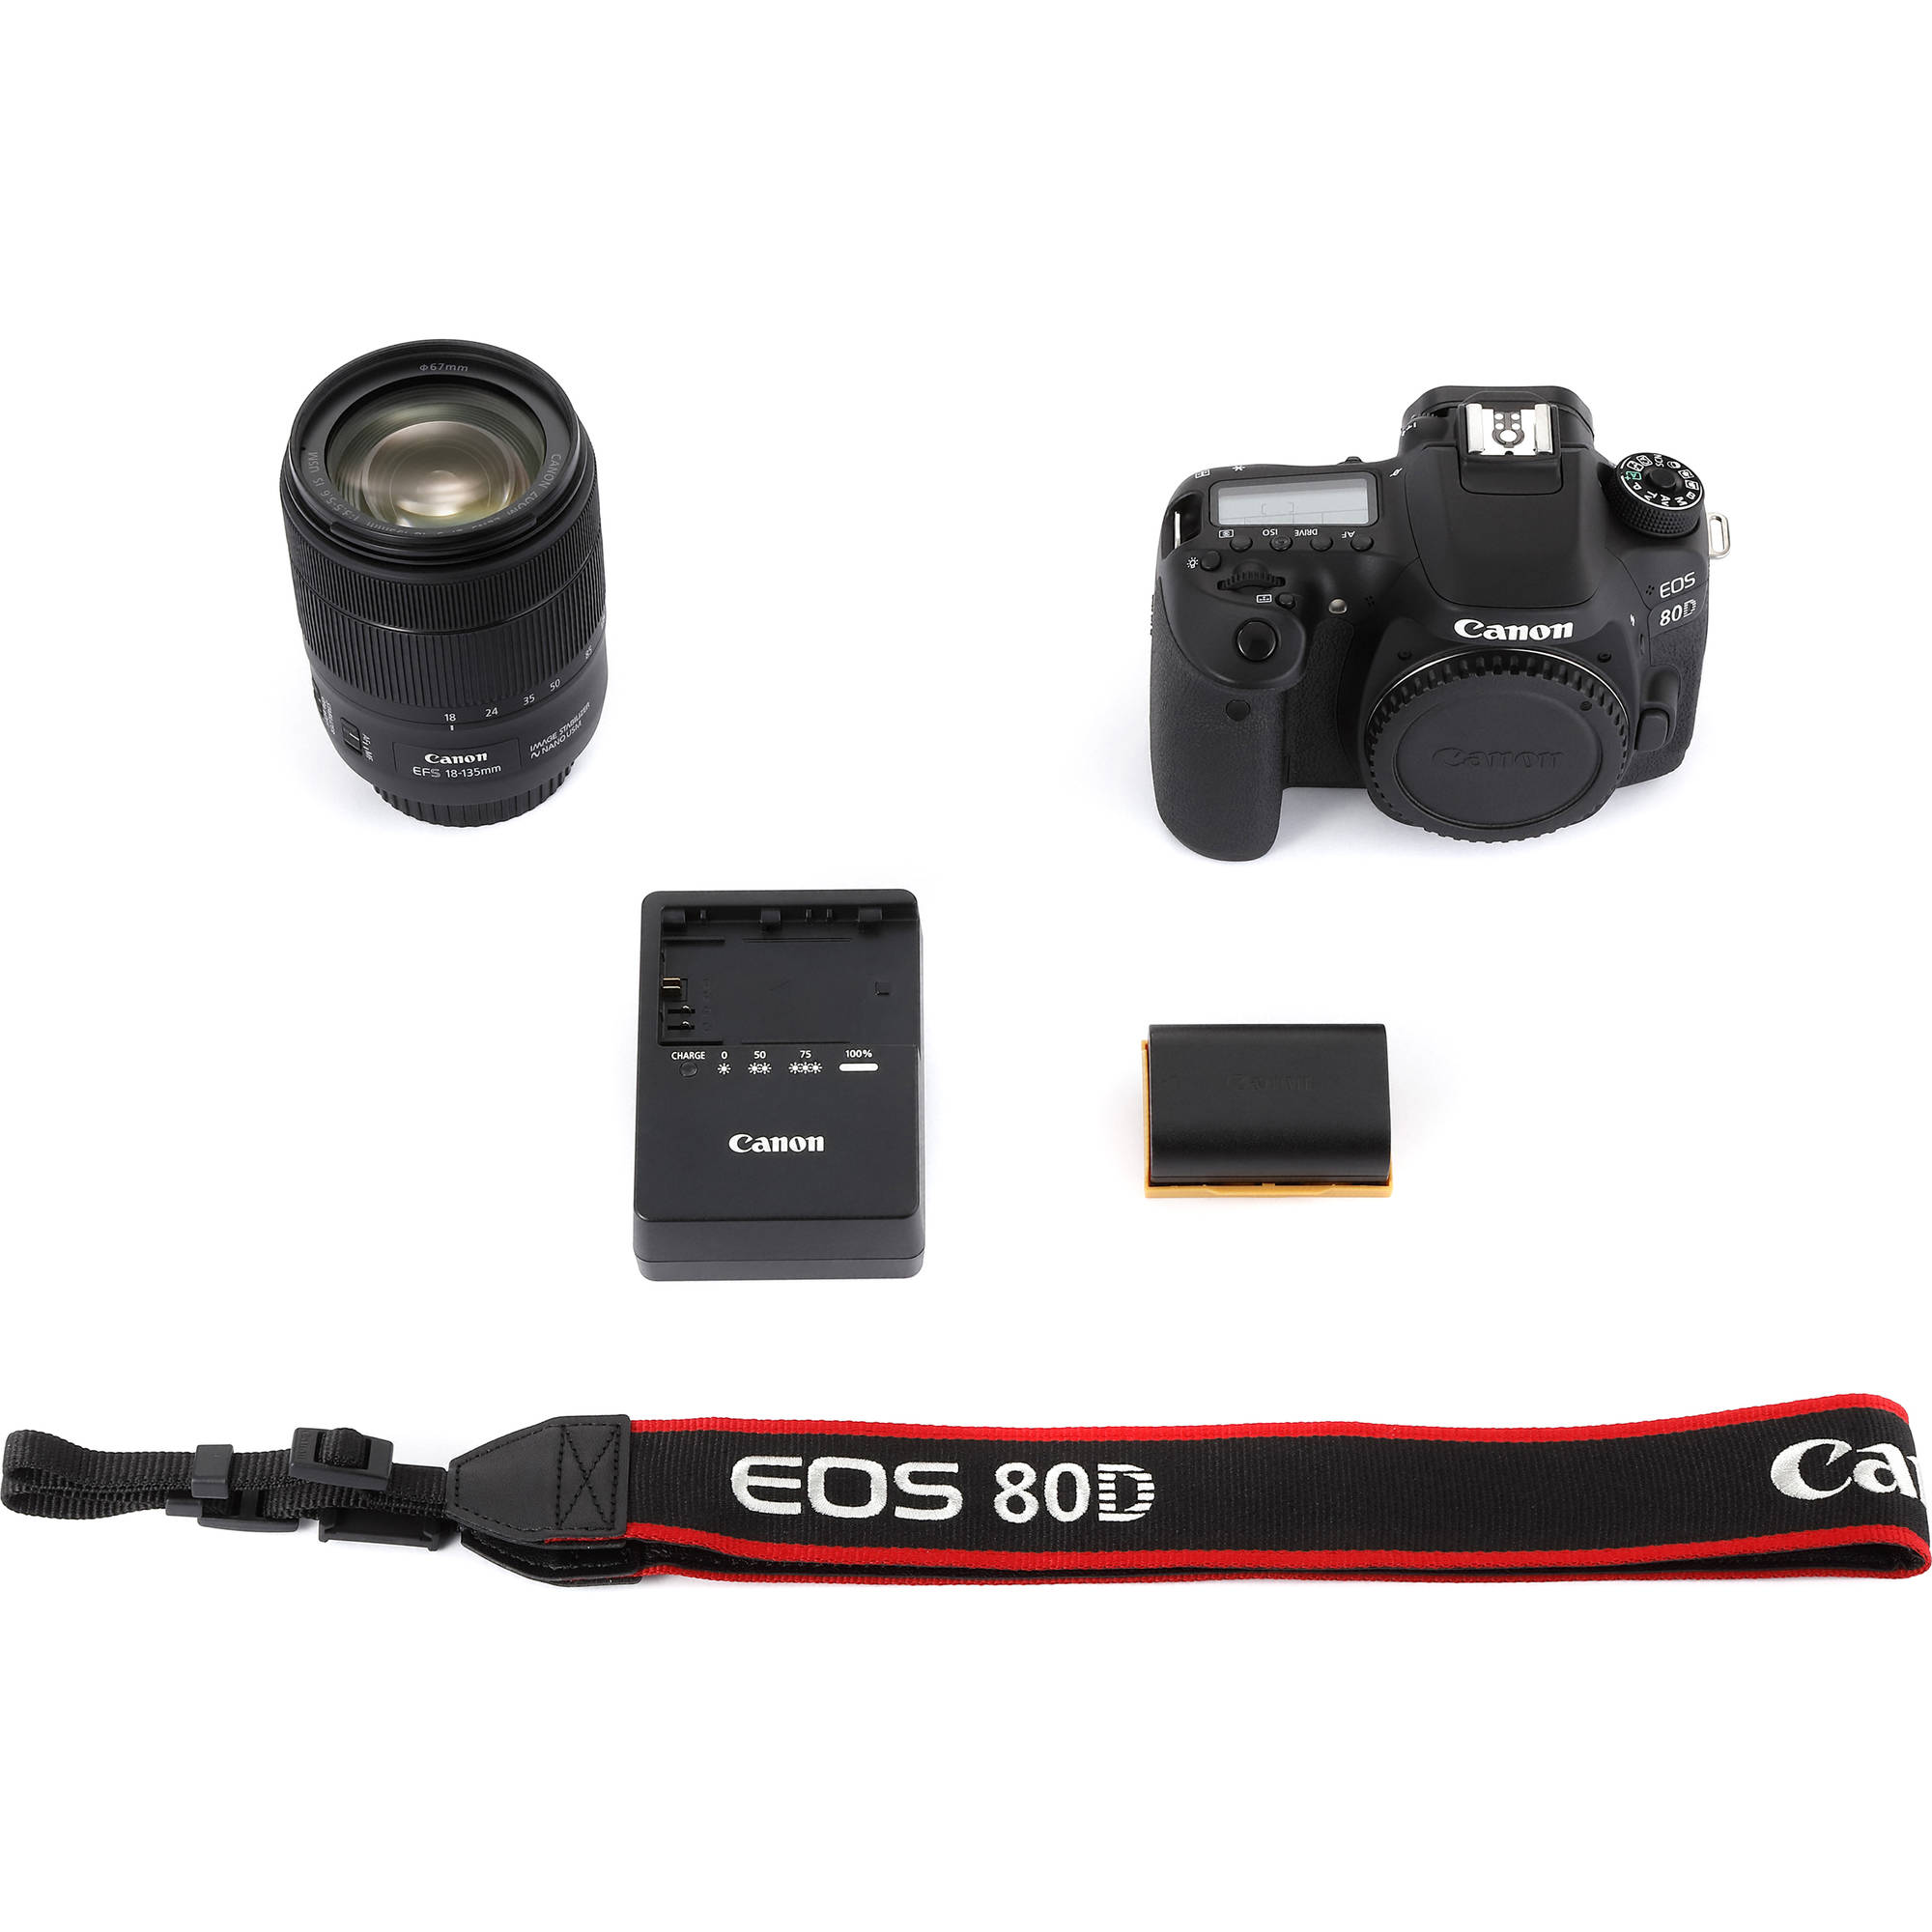 Cámara DSLR de Canon EOS 80D con lente de 18-135 mm